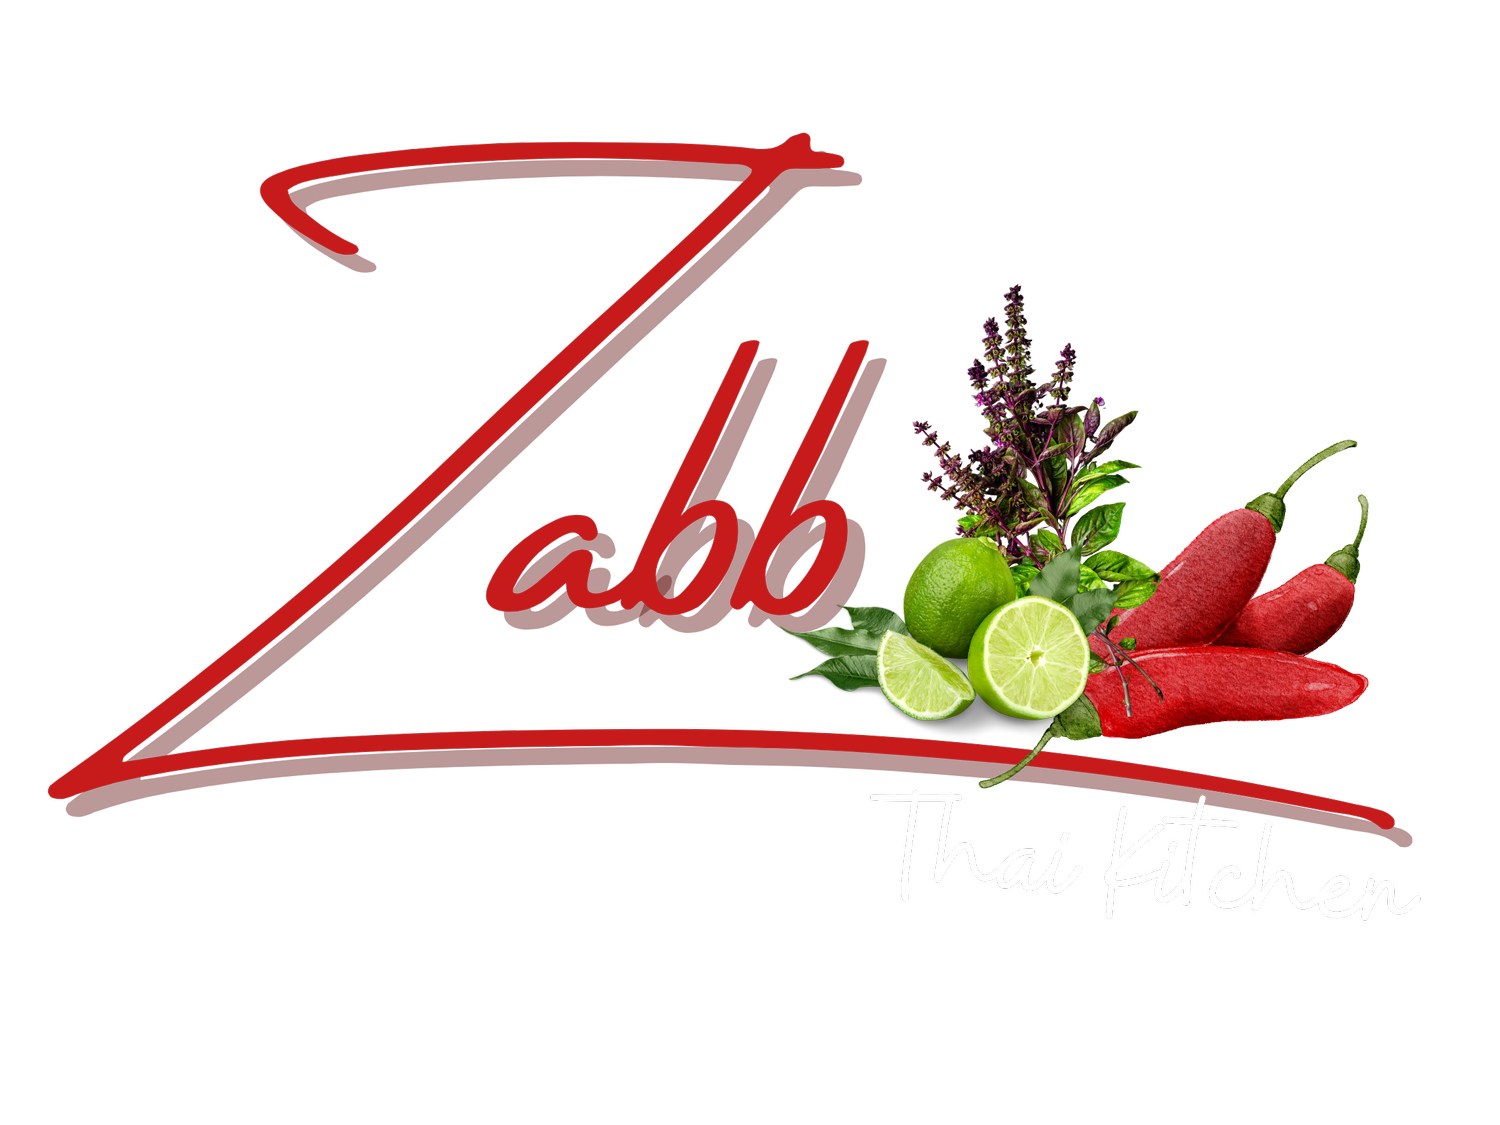 Zabb Thai Kitchen